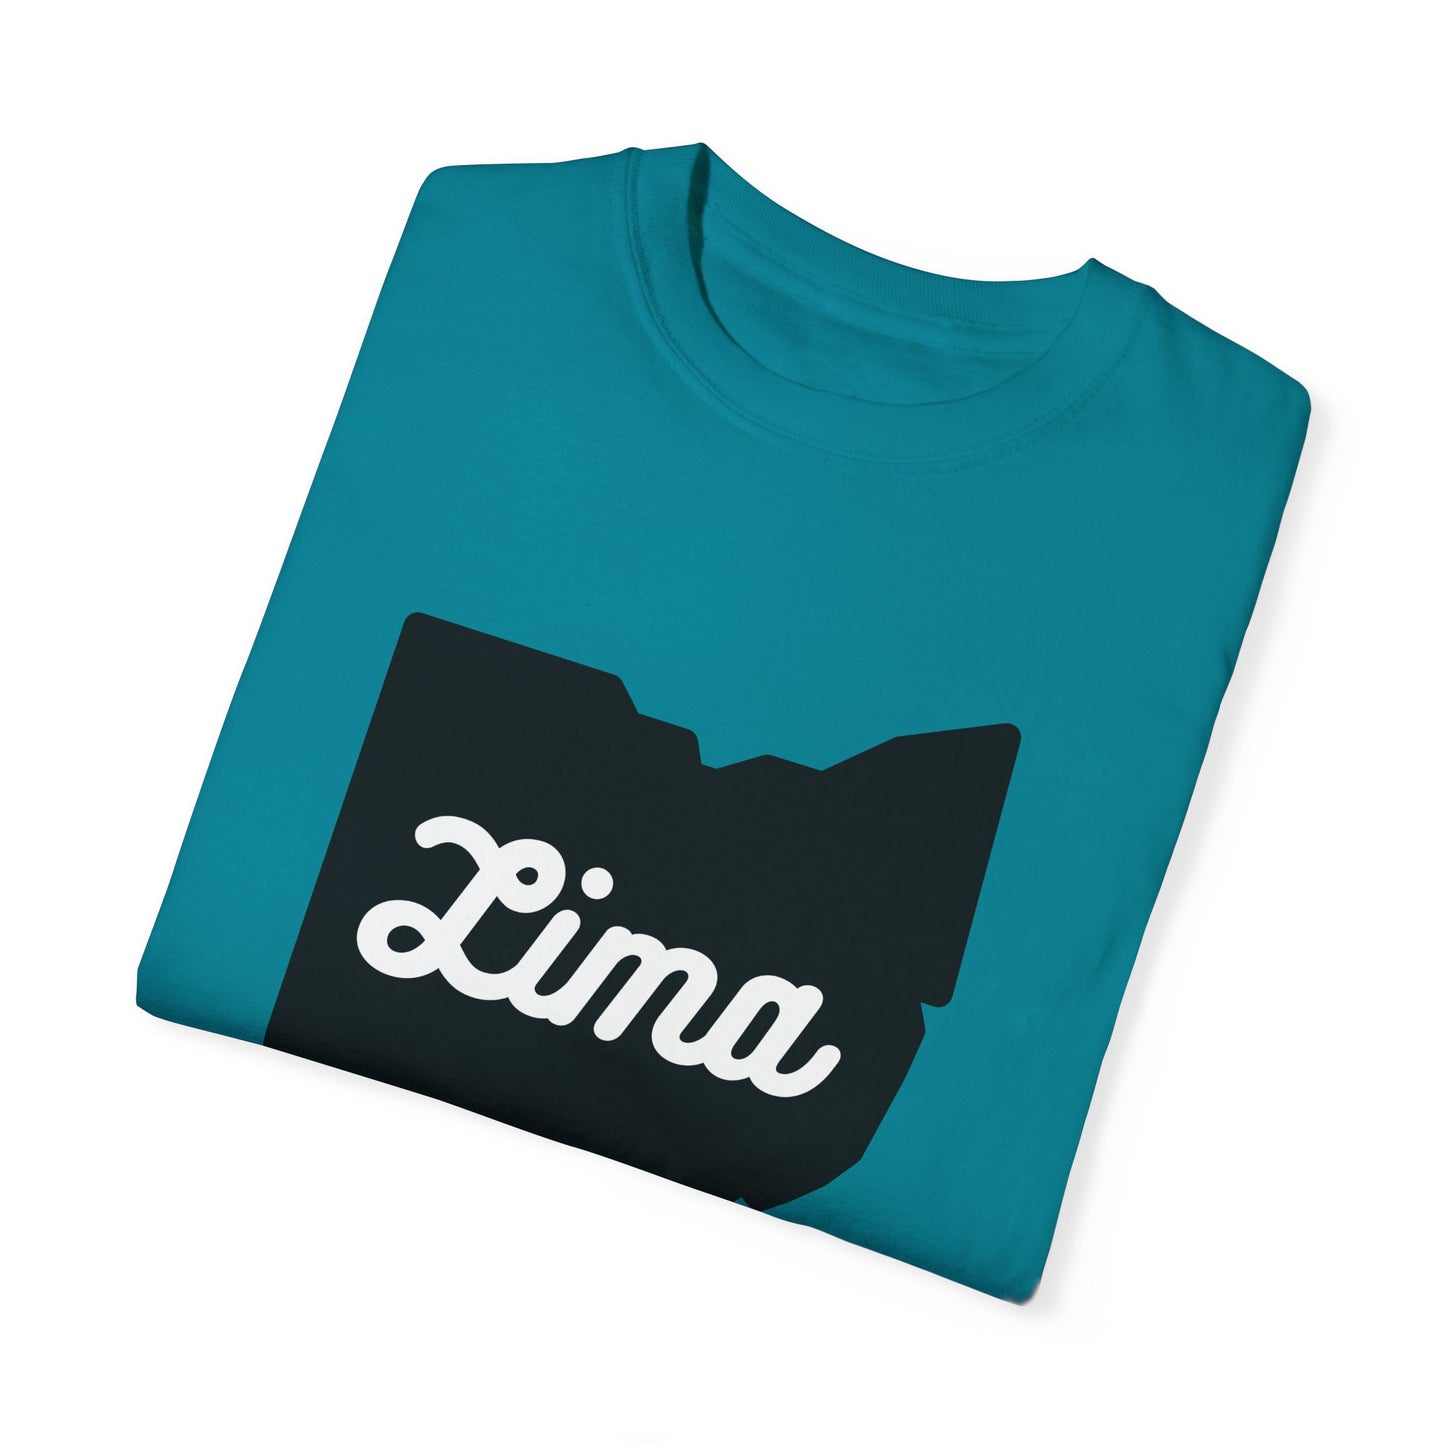 Lima, Ohio Turquoise T-Shirt